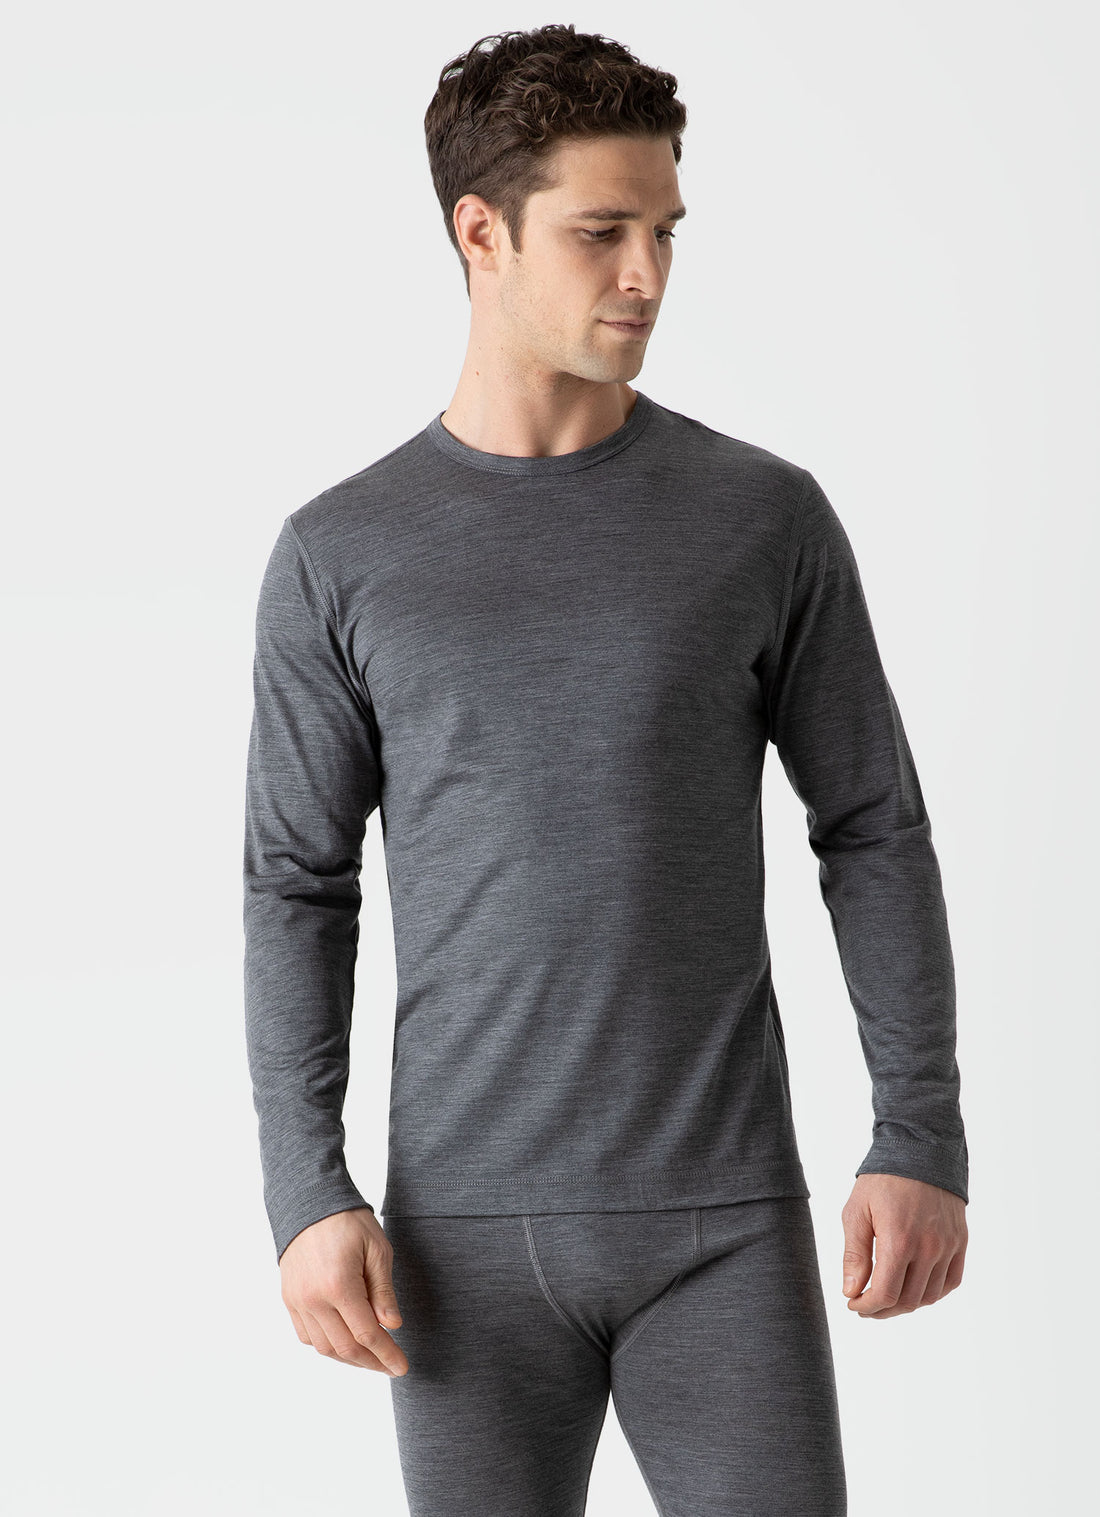 Men's Merino Base Layer T-shirt in Grey Melange